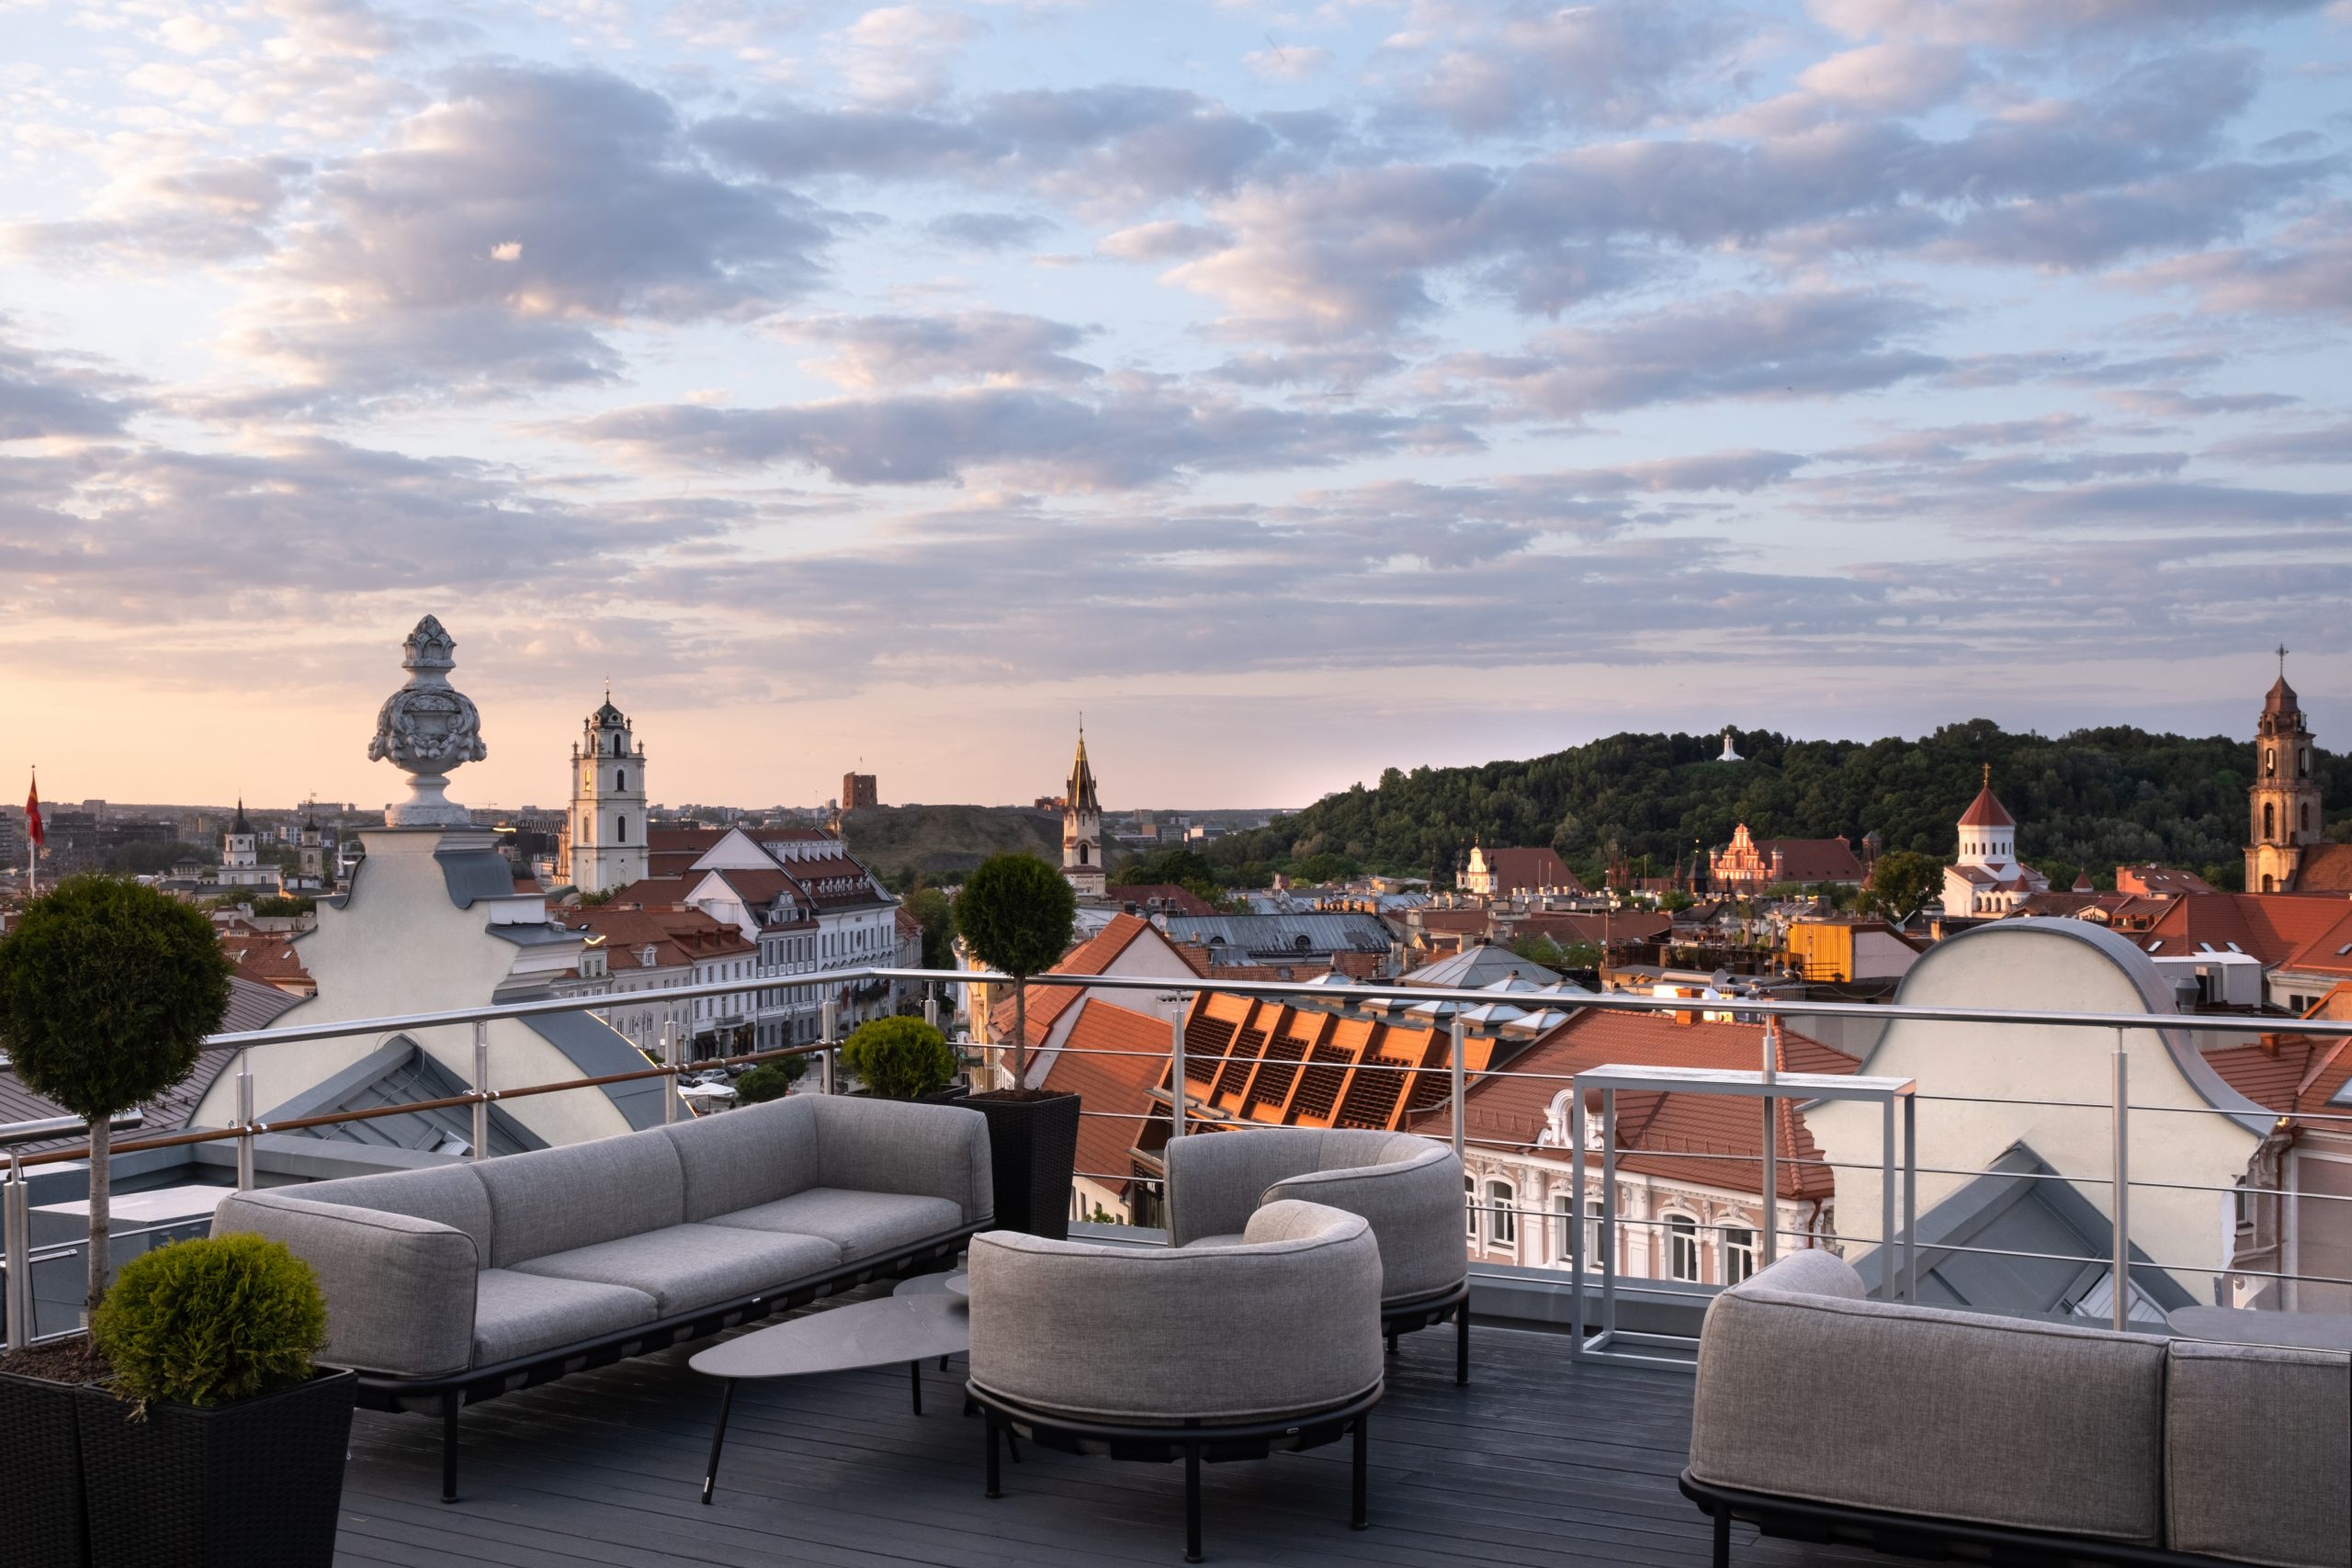 Astorija Brasserie & Bar - restaurants in Vilnius with a view